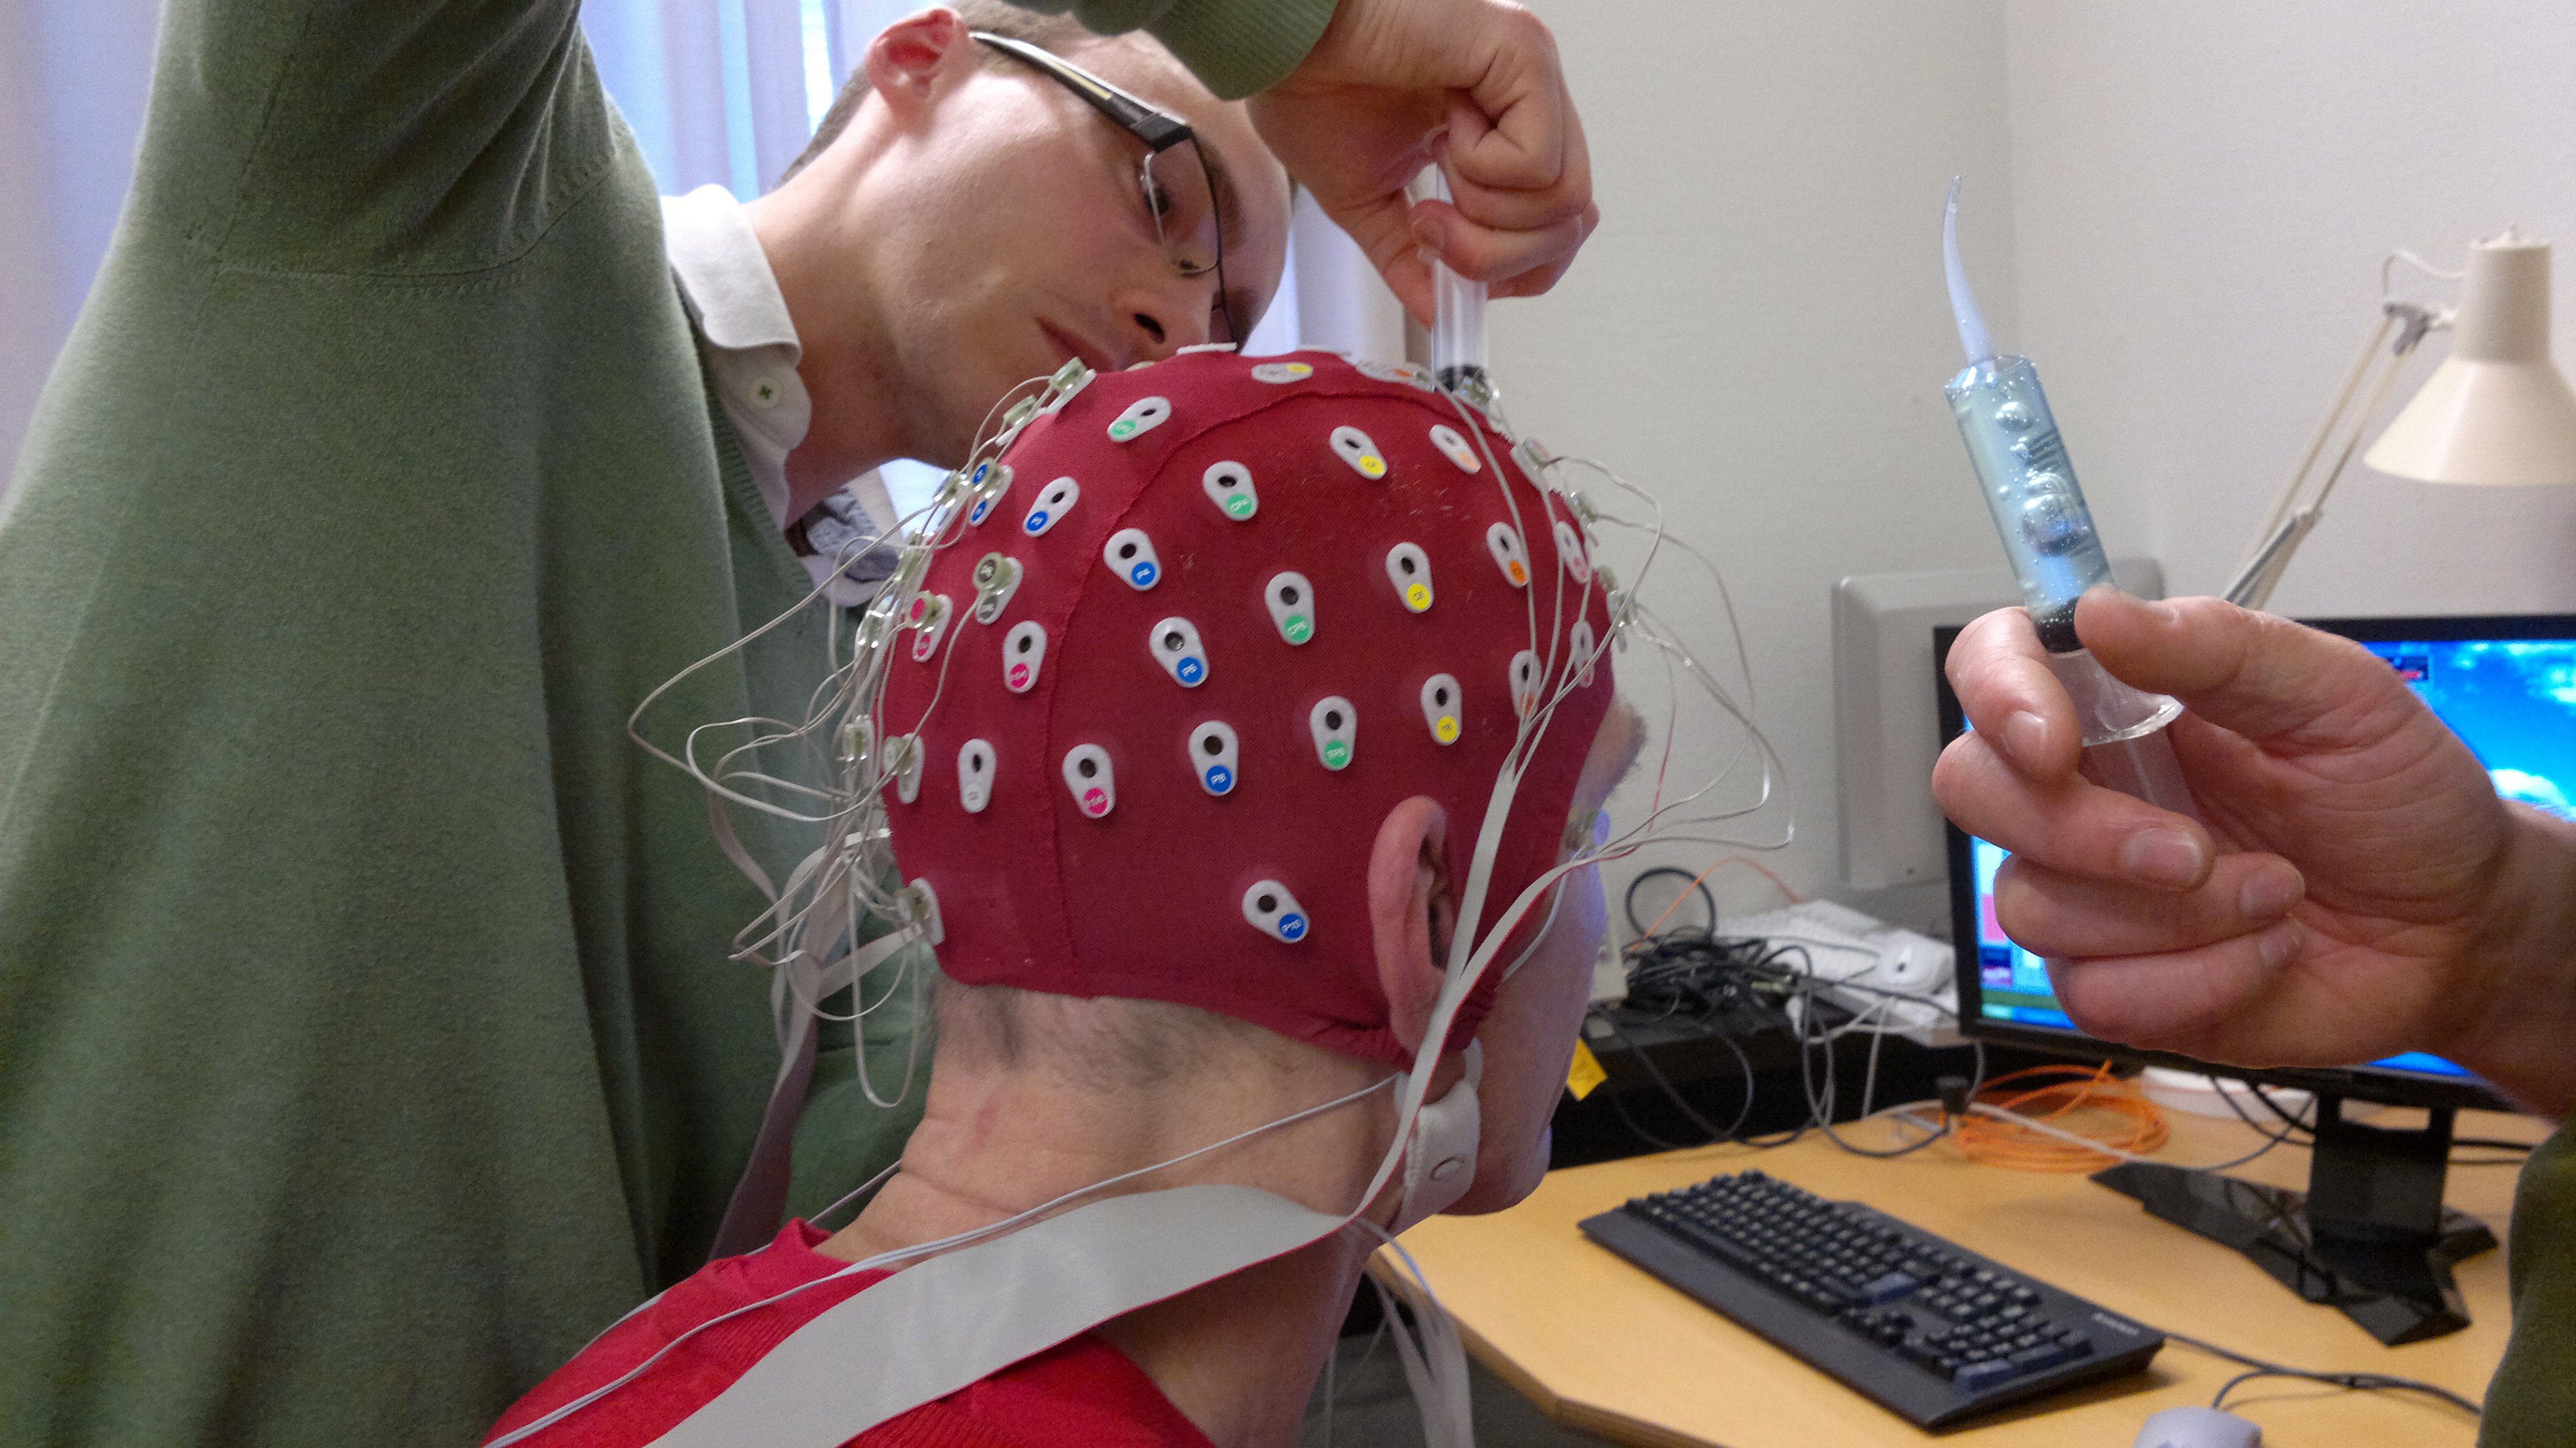 Ээг мониторирование. Электроэнцефалограмма головного мозга. Электроэнцефалография (ЭЭГ). РЭГ И ЭЭГ. ЭЭГ (электроэнцефалограмма) головного мозга.